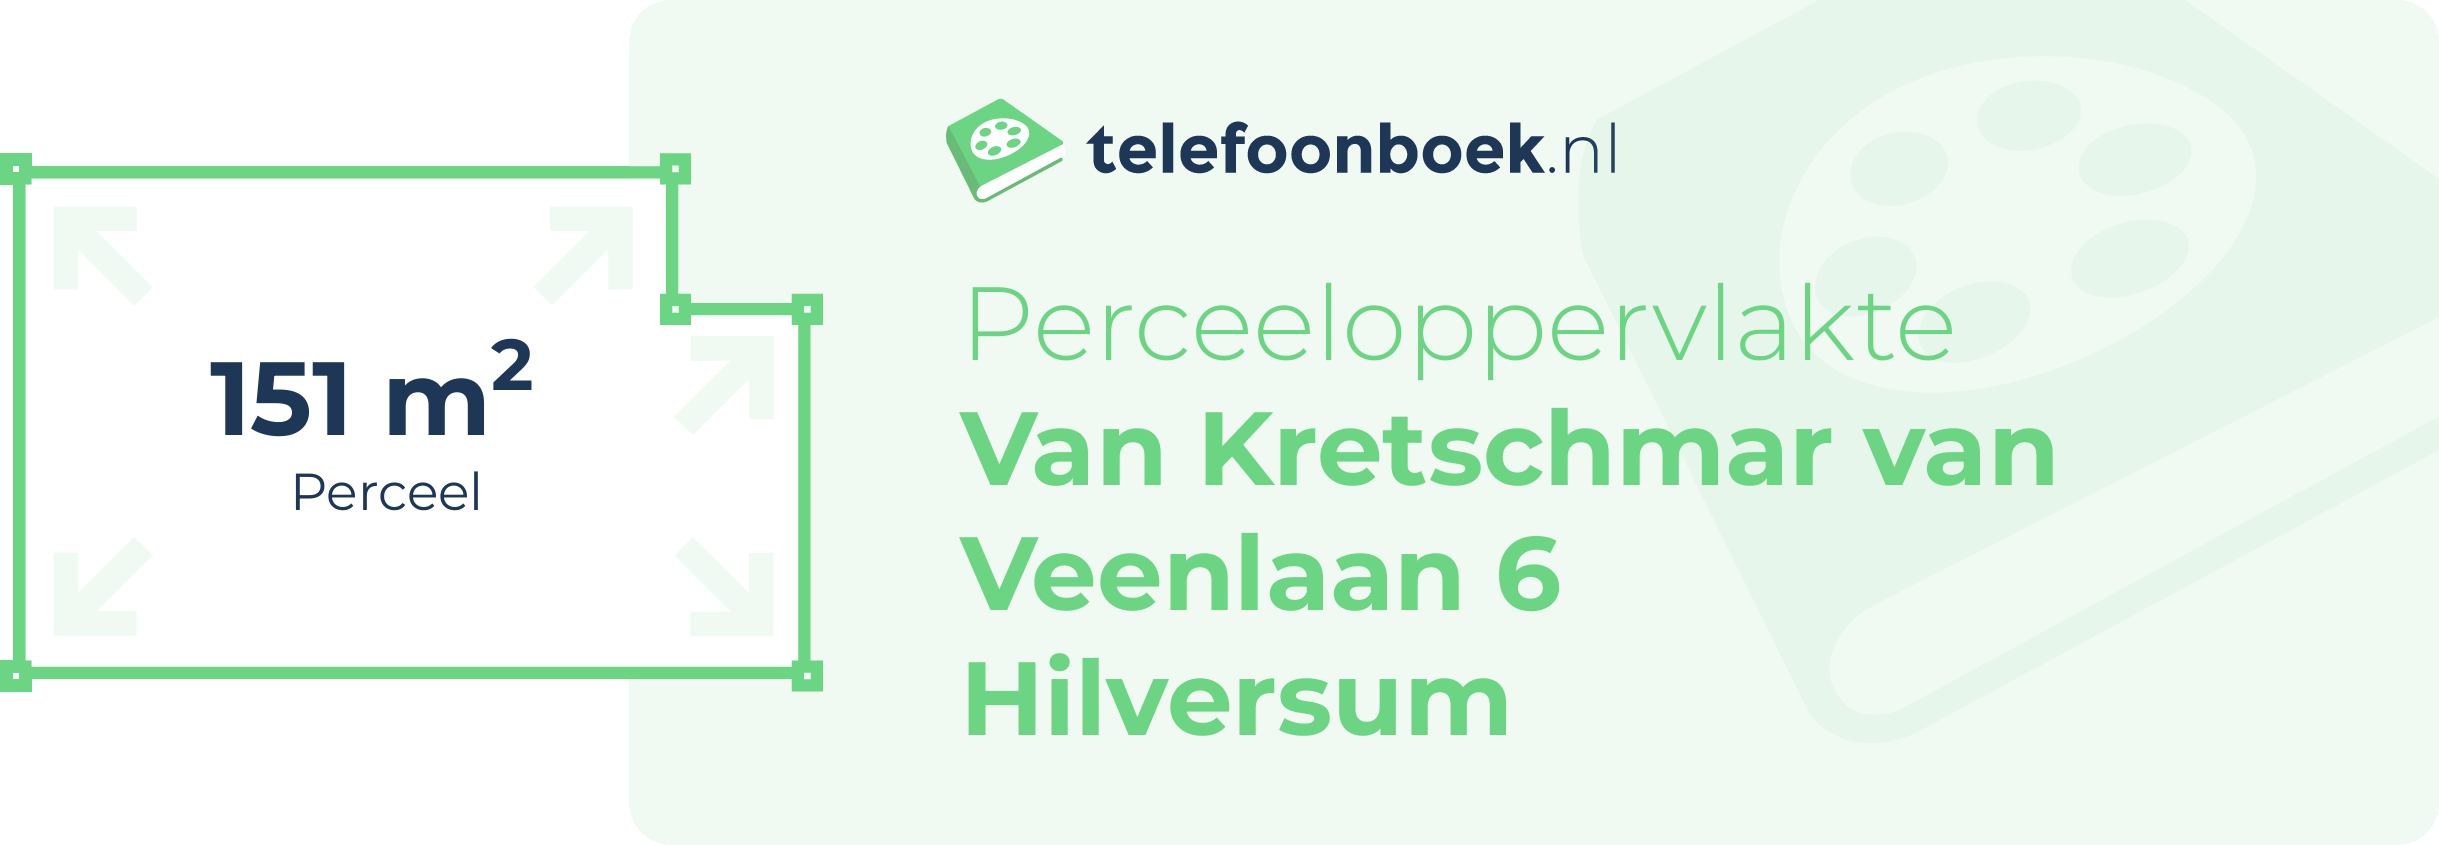 Perceeloppervlakte Van Kretschmar Van Veenlaan 6 Hilversum